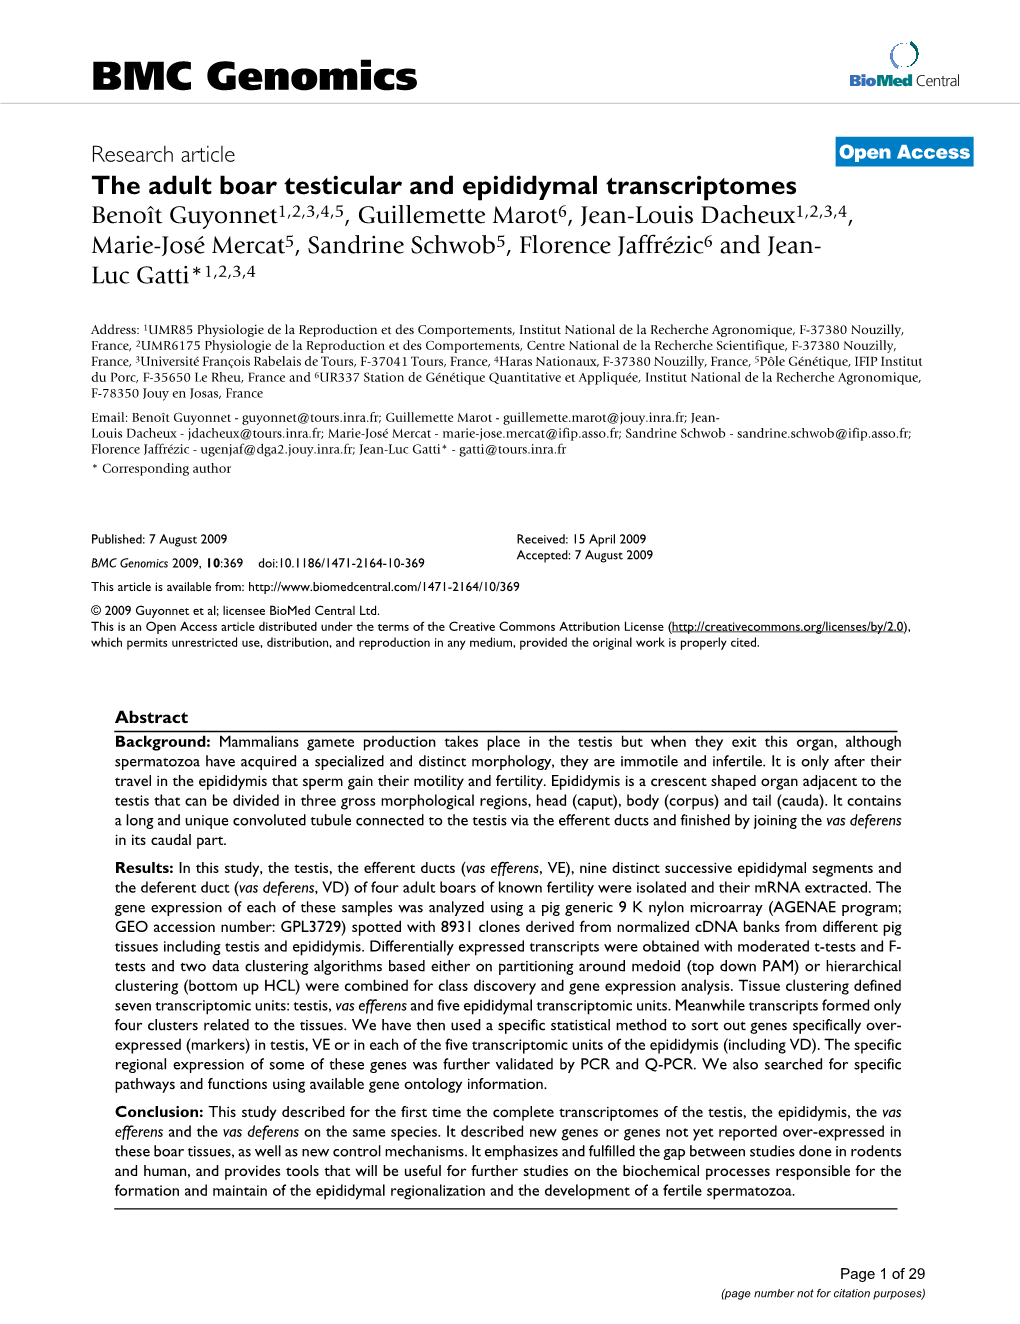 The Adult Boar Testicular and Epididymal Transcriptomes